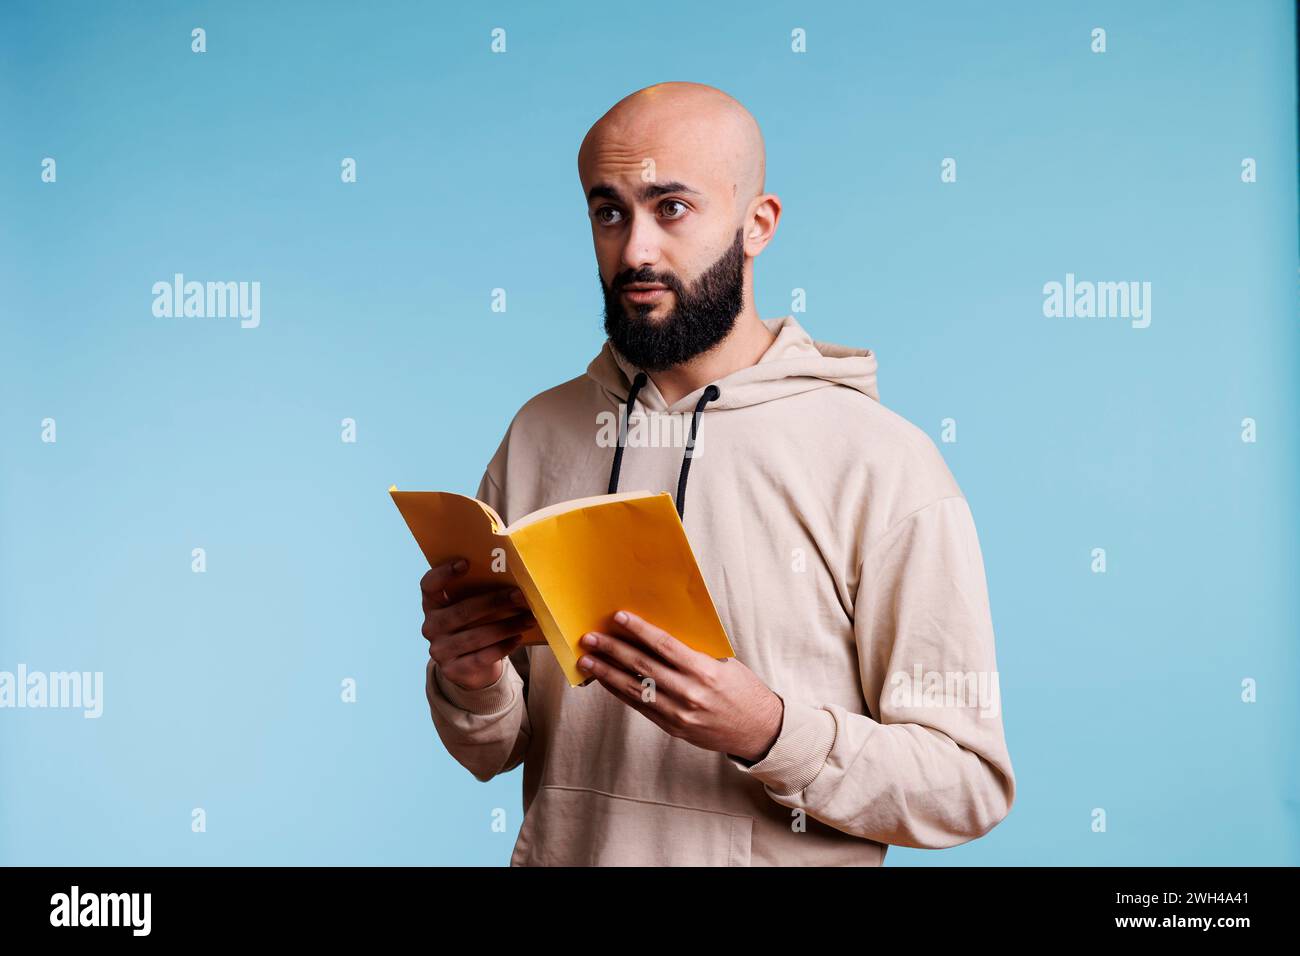 Junger arabischer Mann, der ein Softcover-Buch hält und über einen Plan nachdenkt, während er wegblickt. Arabische Person liest Roman Taschenbuch mit gelbem Cover, während sie mit nachdenklichem Ausdruck steht Stockfoto